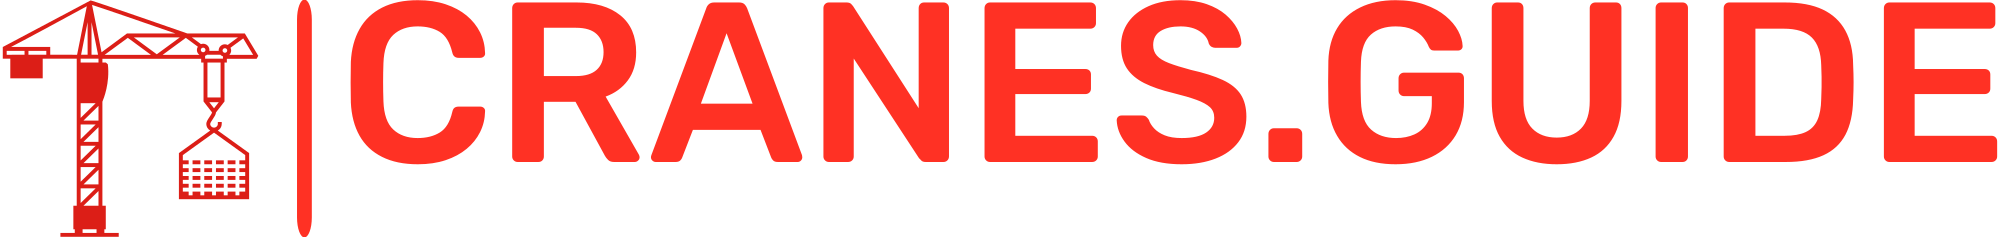 cranesguide logo